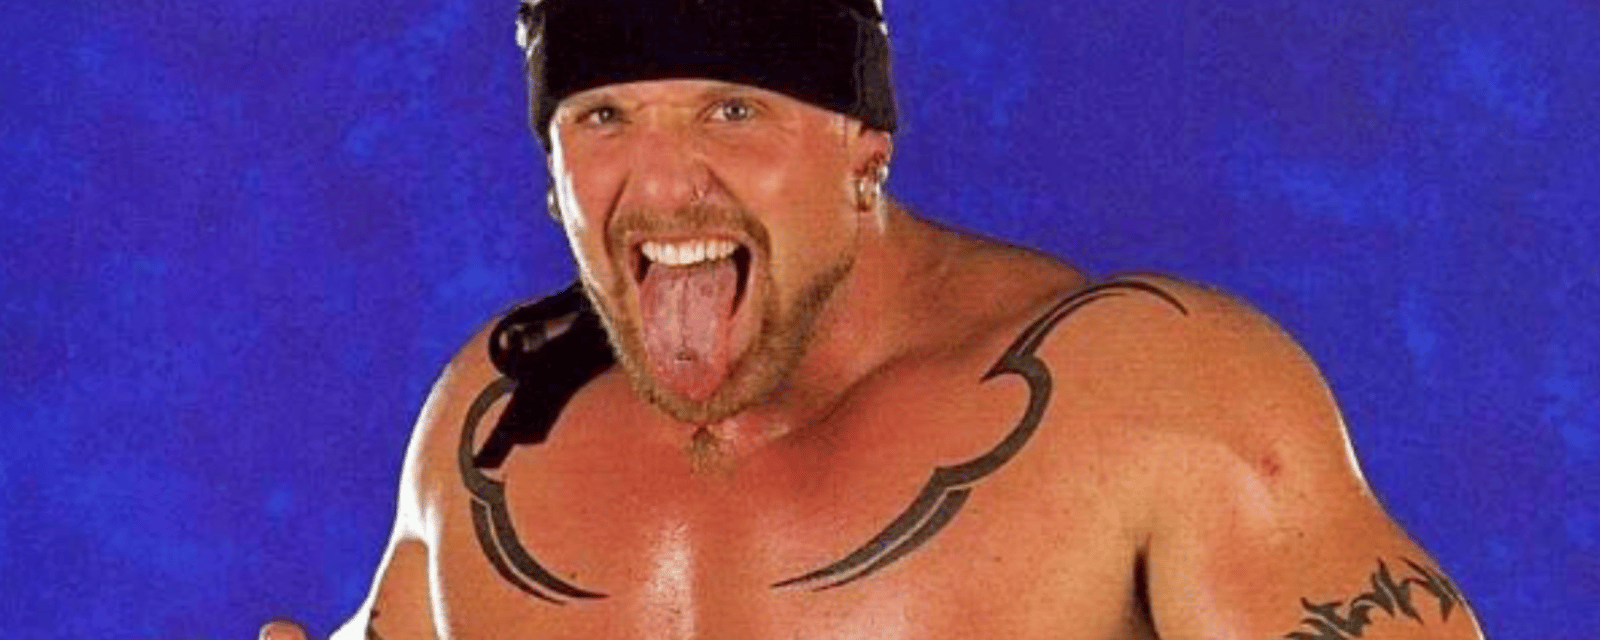 Ex-Broncos player and WWE star Darren Drozdov has died 